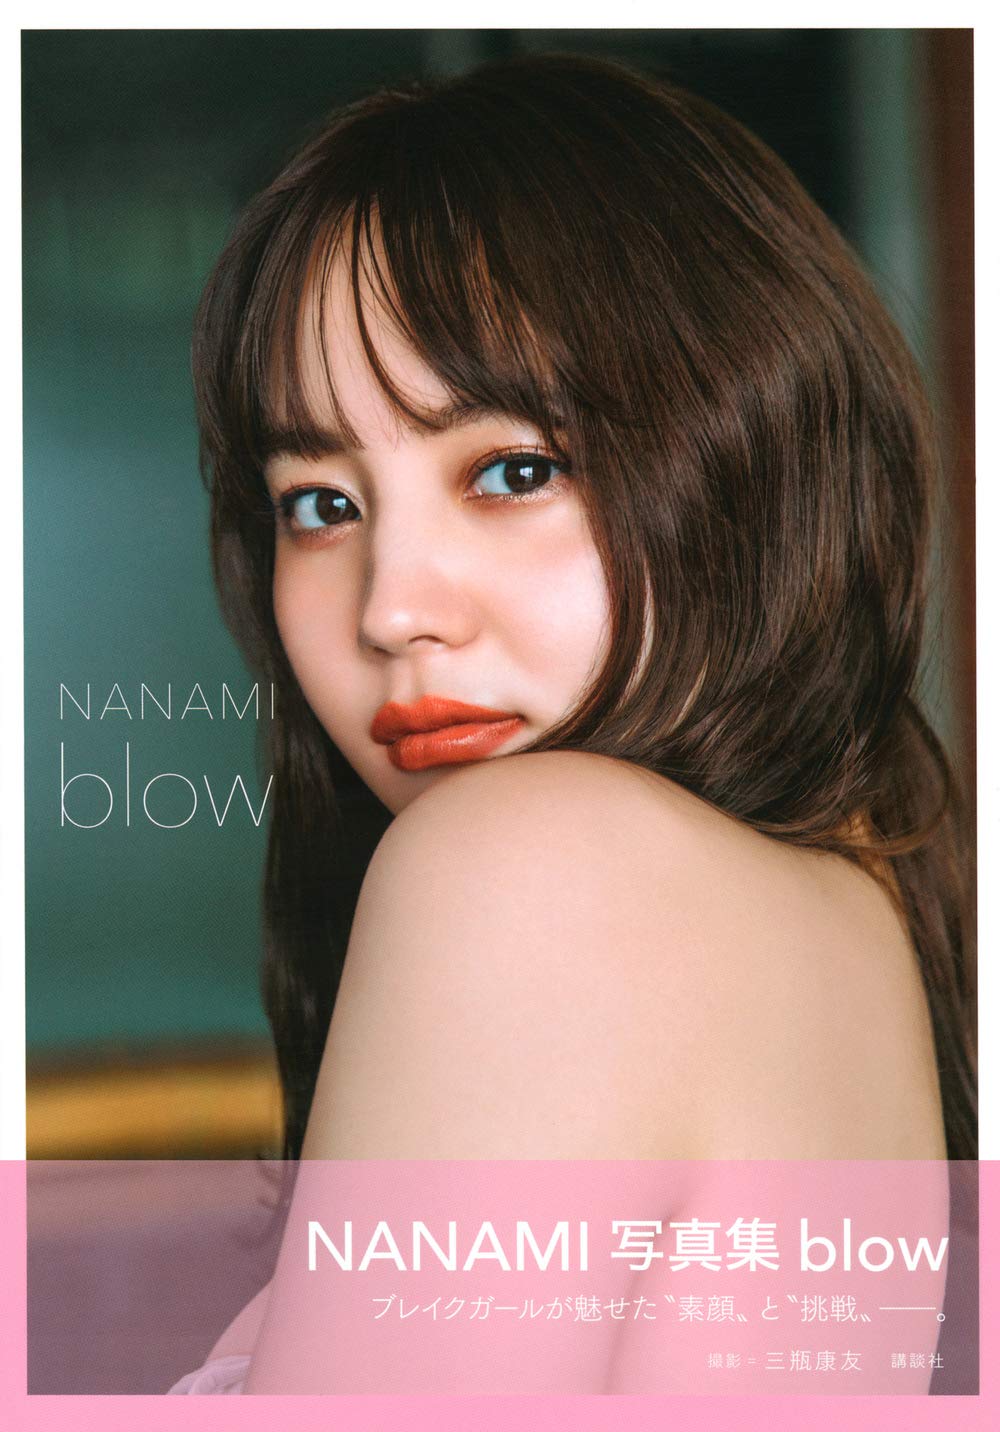 나나미 사진집 - 블로우 blow